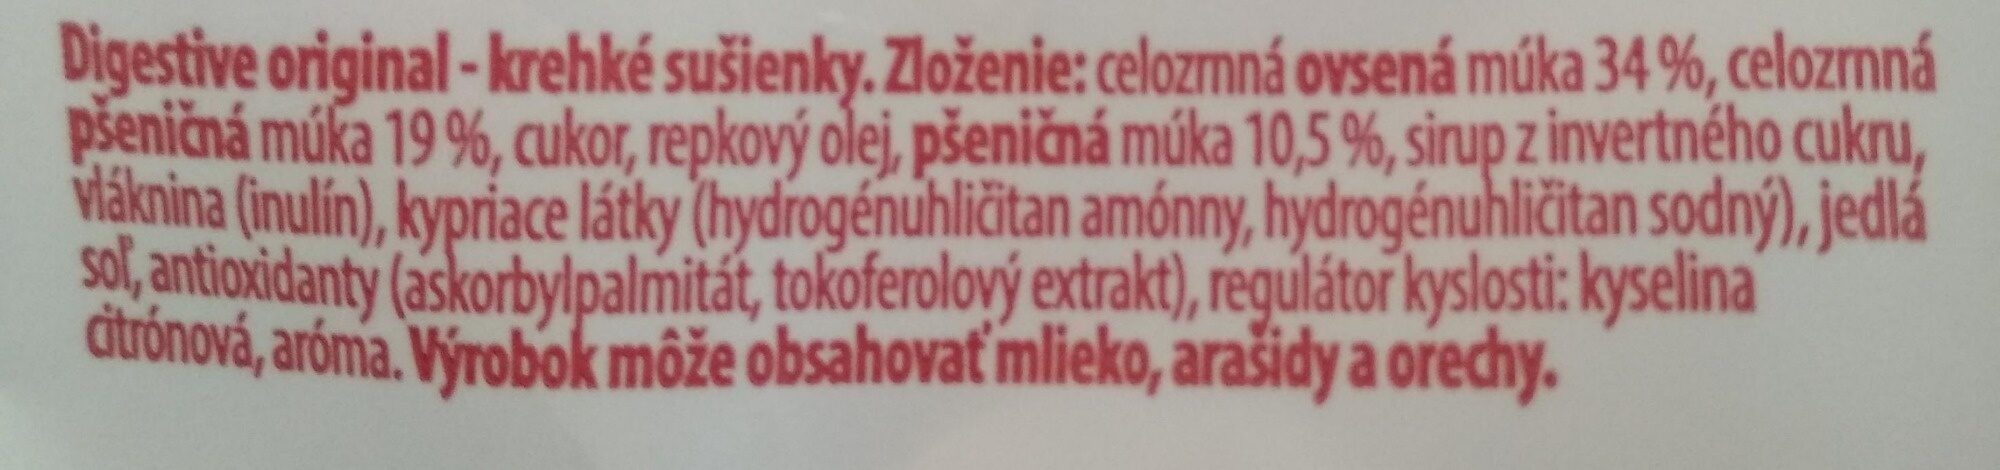 Emco Digestive Original - Ingredients - sk